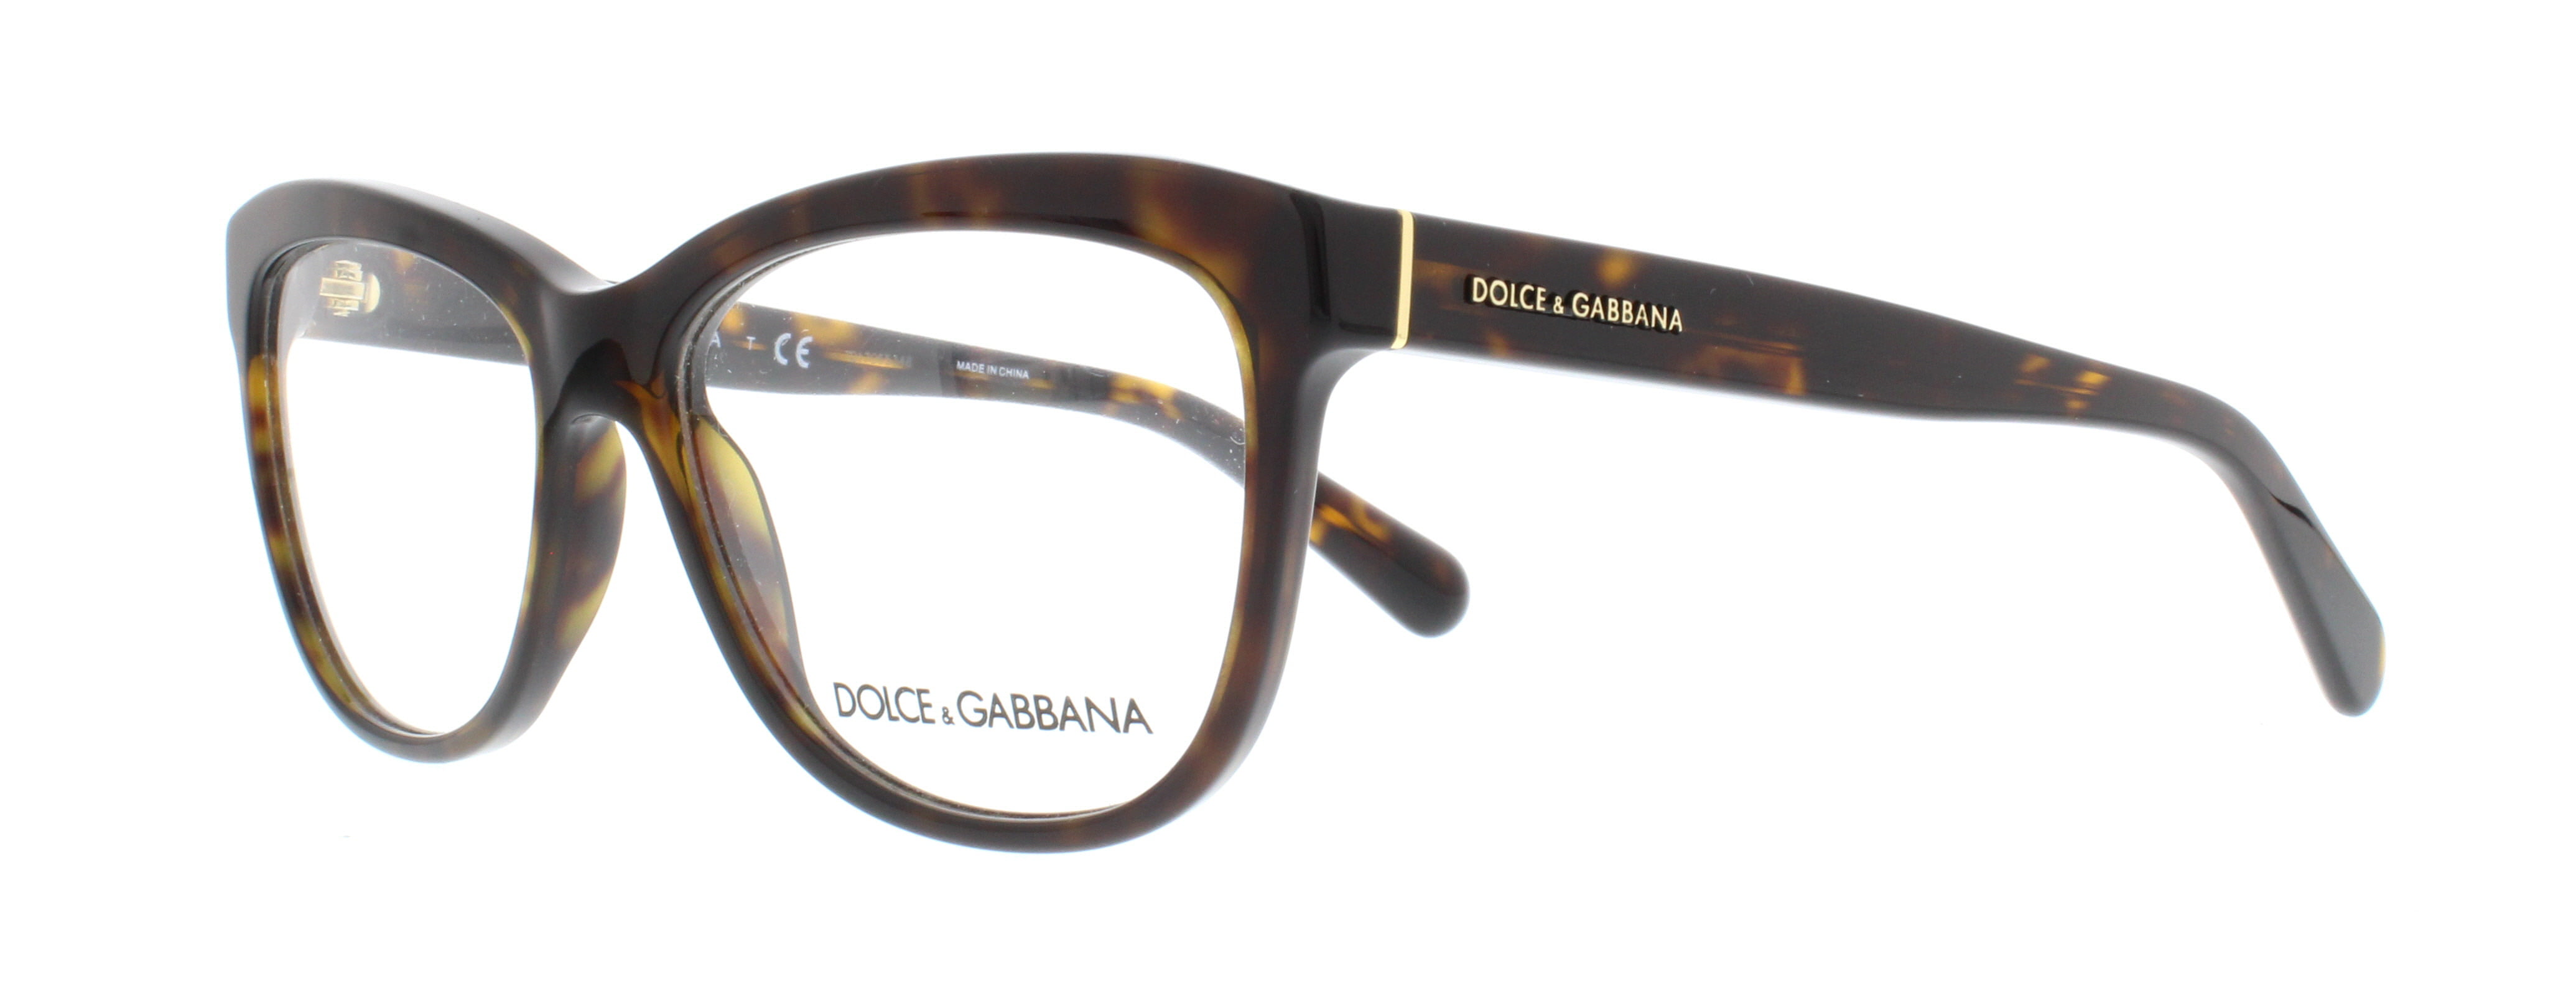 Descubrir 30 Imagen Dolce Gabbana Tortoise Glasses Thcshoanghoatham Vn